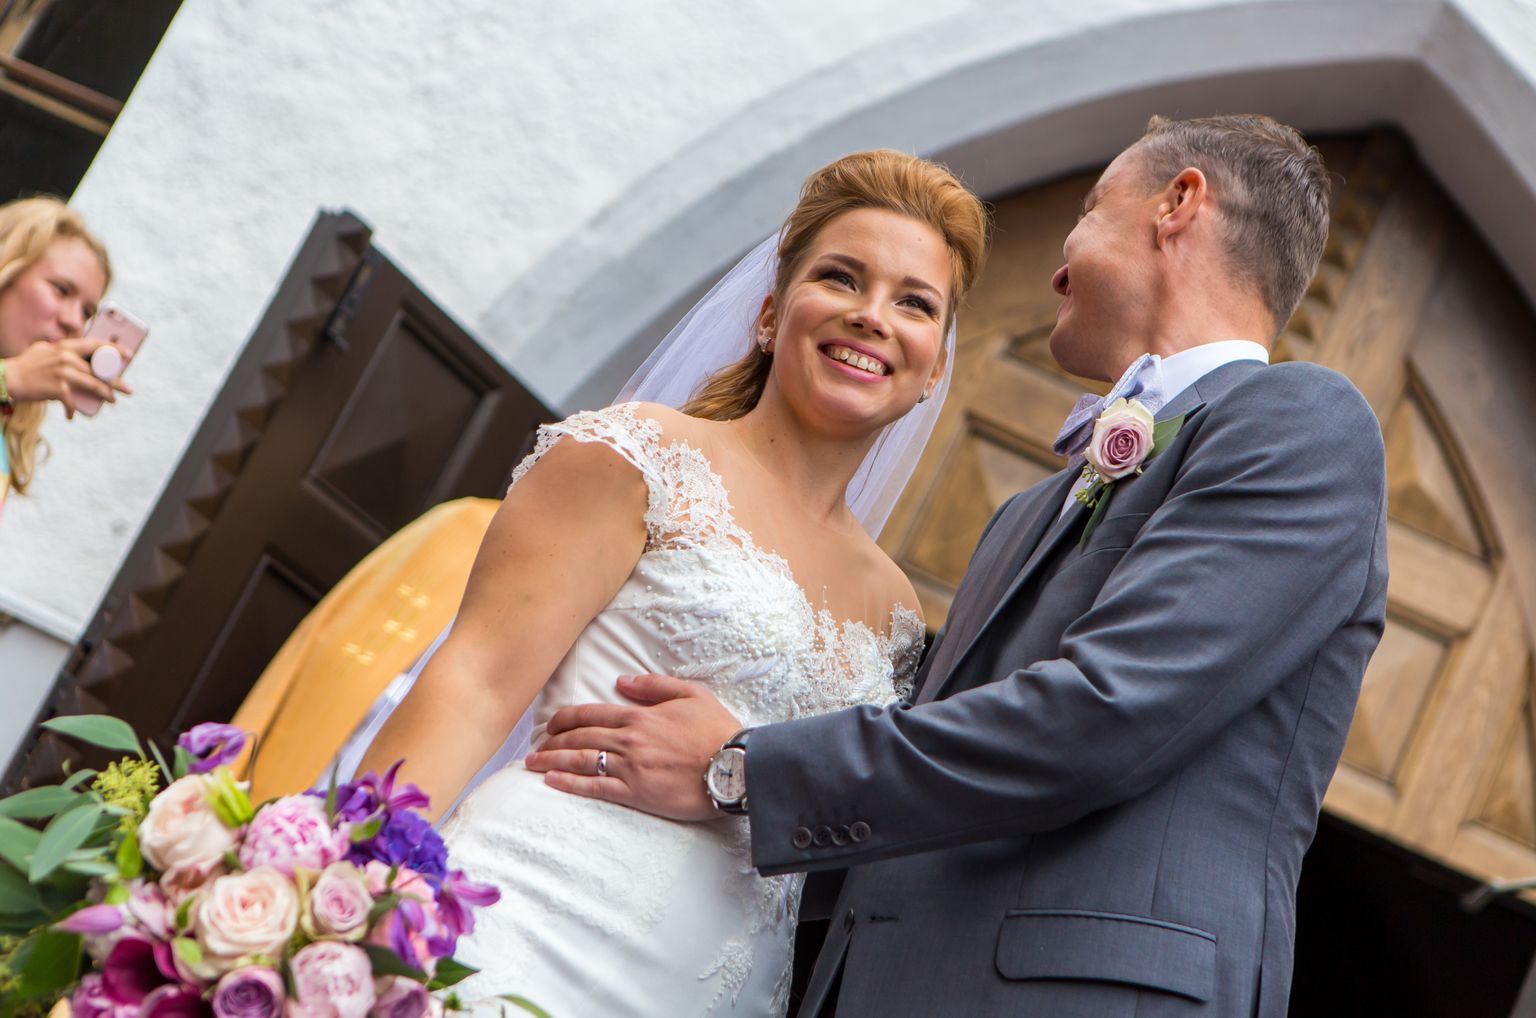 Luisa ja Taavi Rõivas abiellusid 19. augustil 2017.